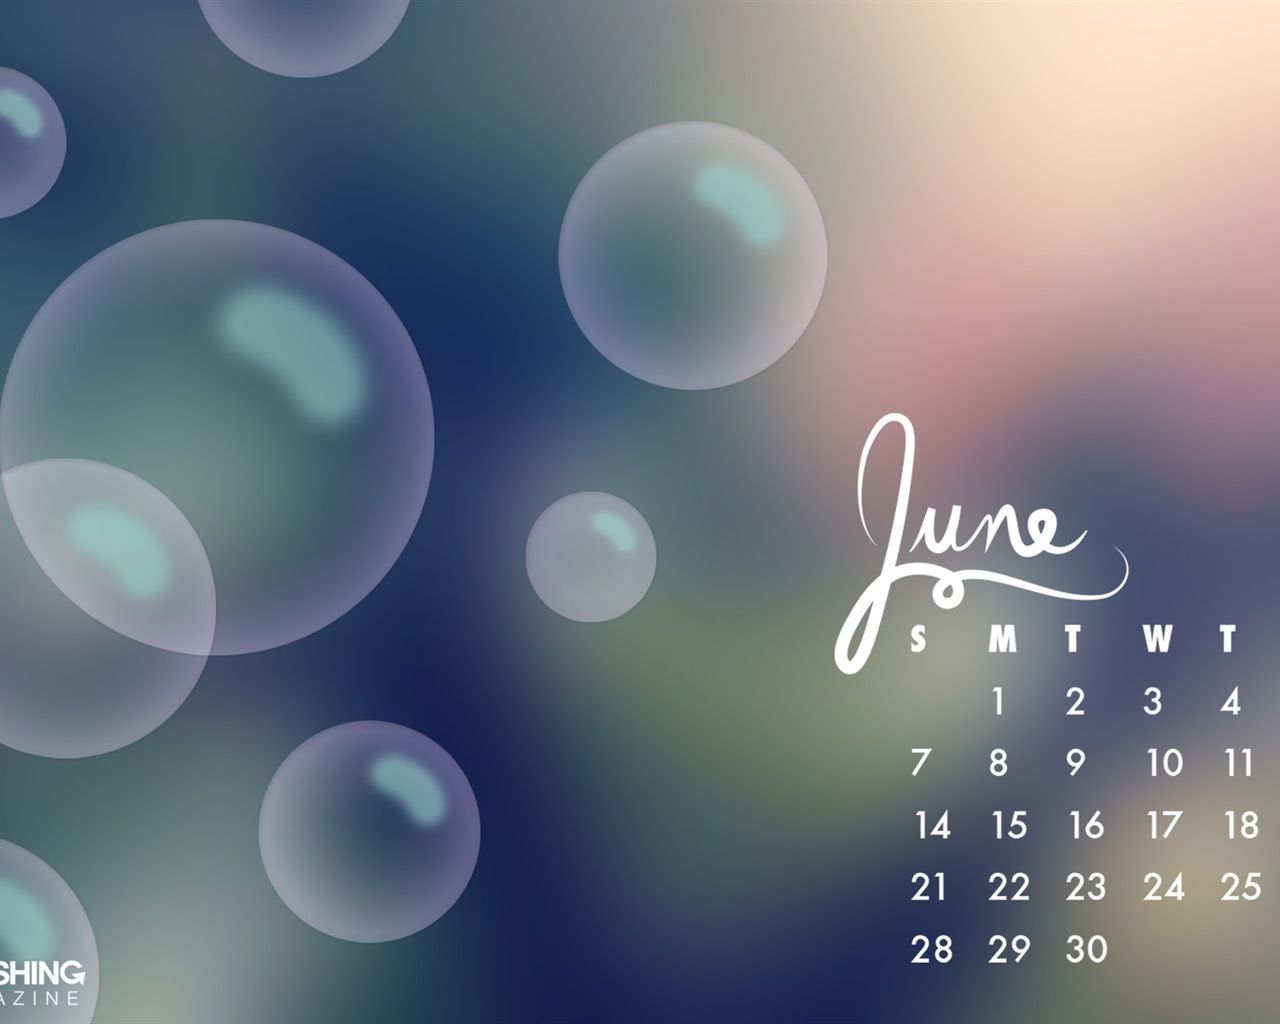 June 2015 calendar wallpaper (2) #16 - 1280x1024